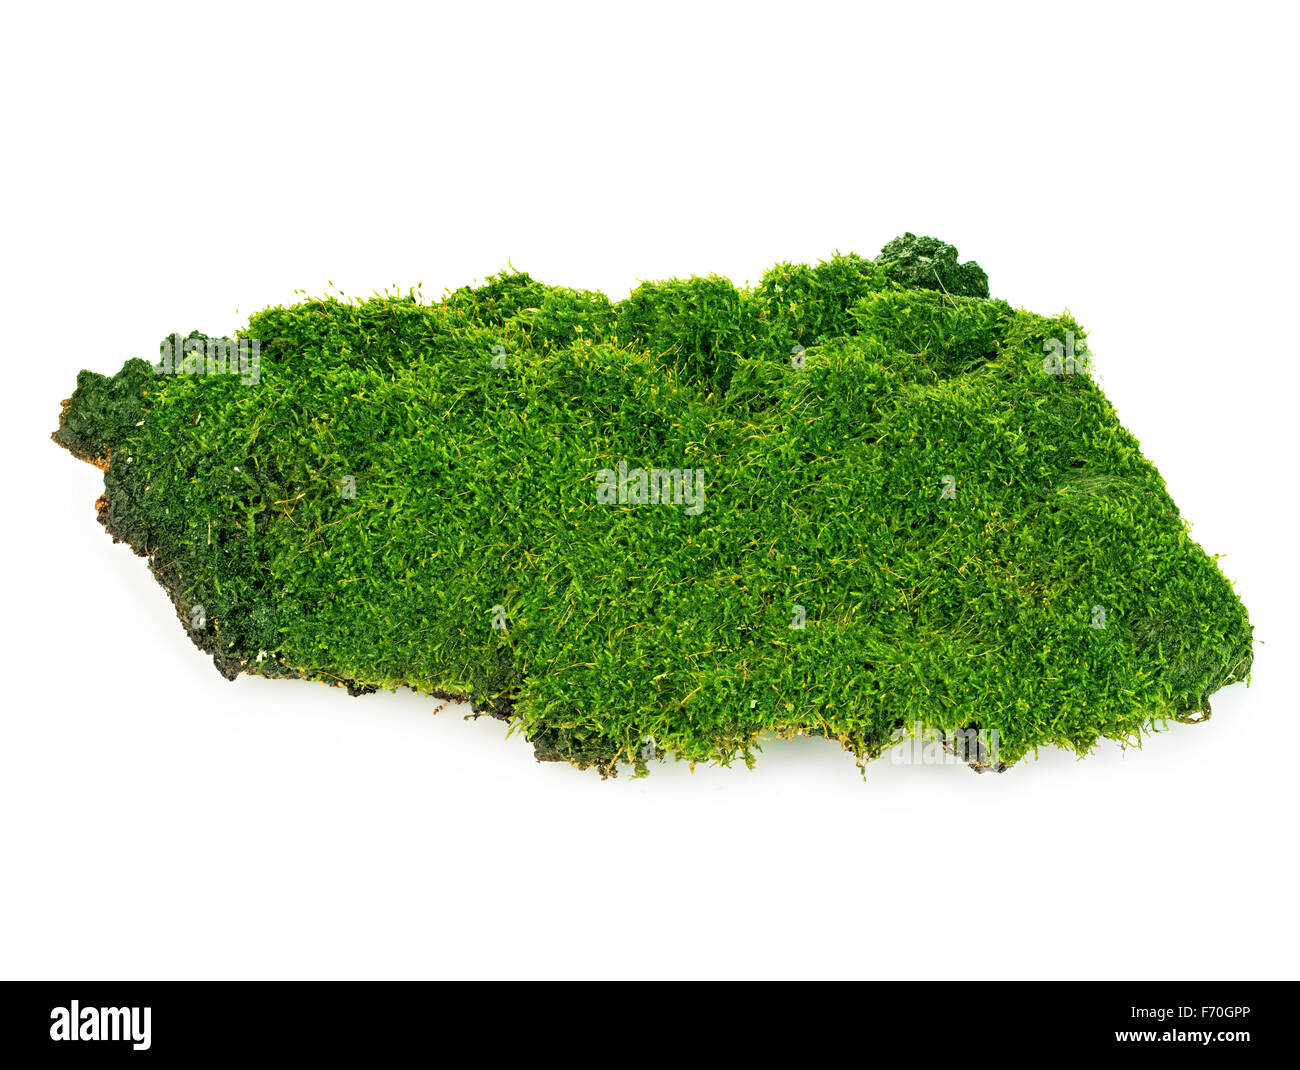 Schönen grünen Moos Nahaufnahme isoliert auf einem weißen Hintergrund. Stockfoto